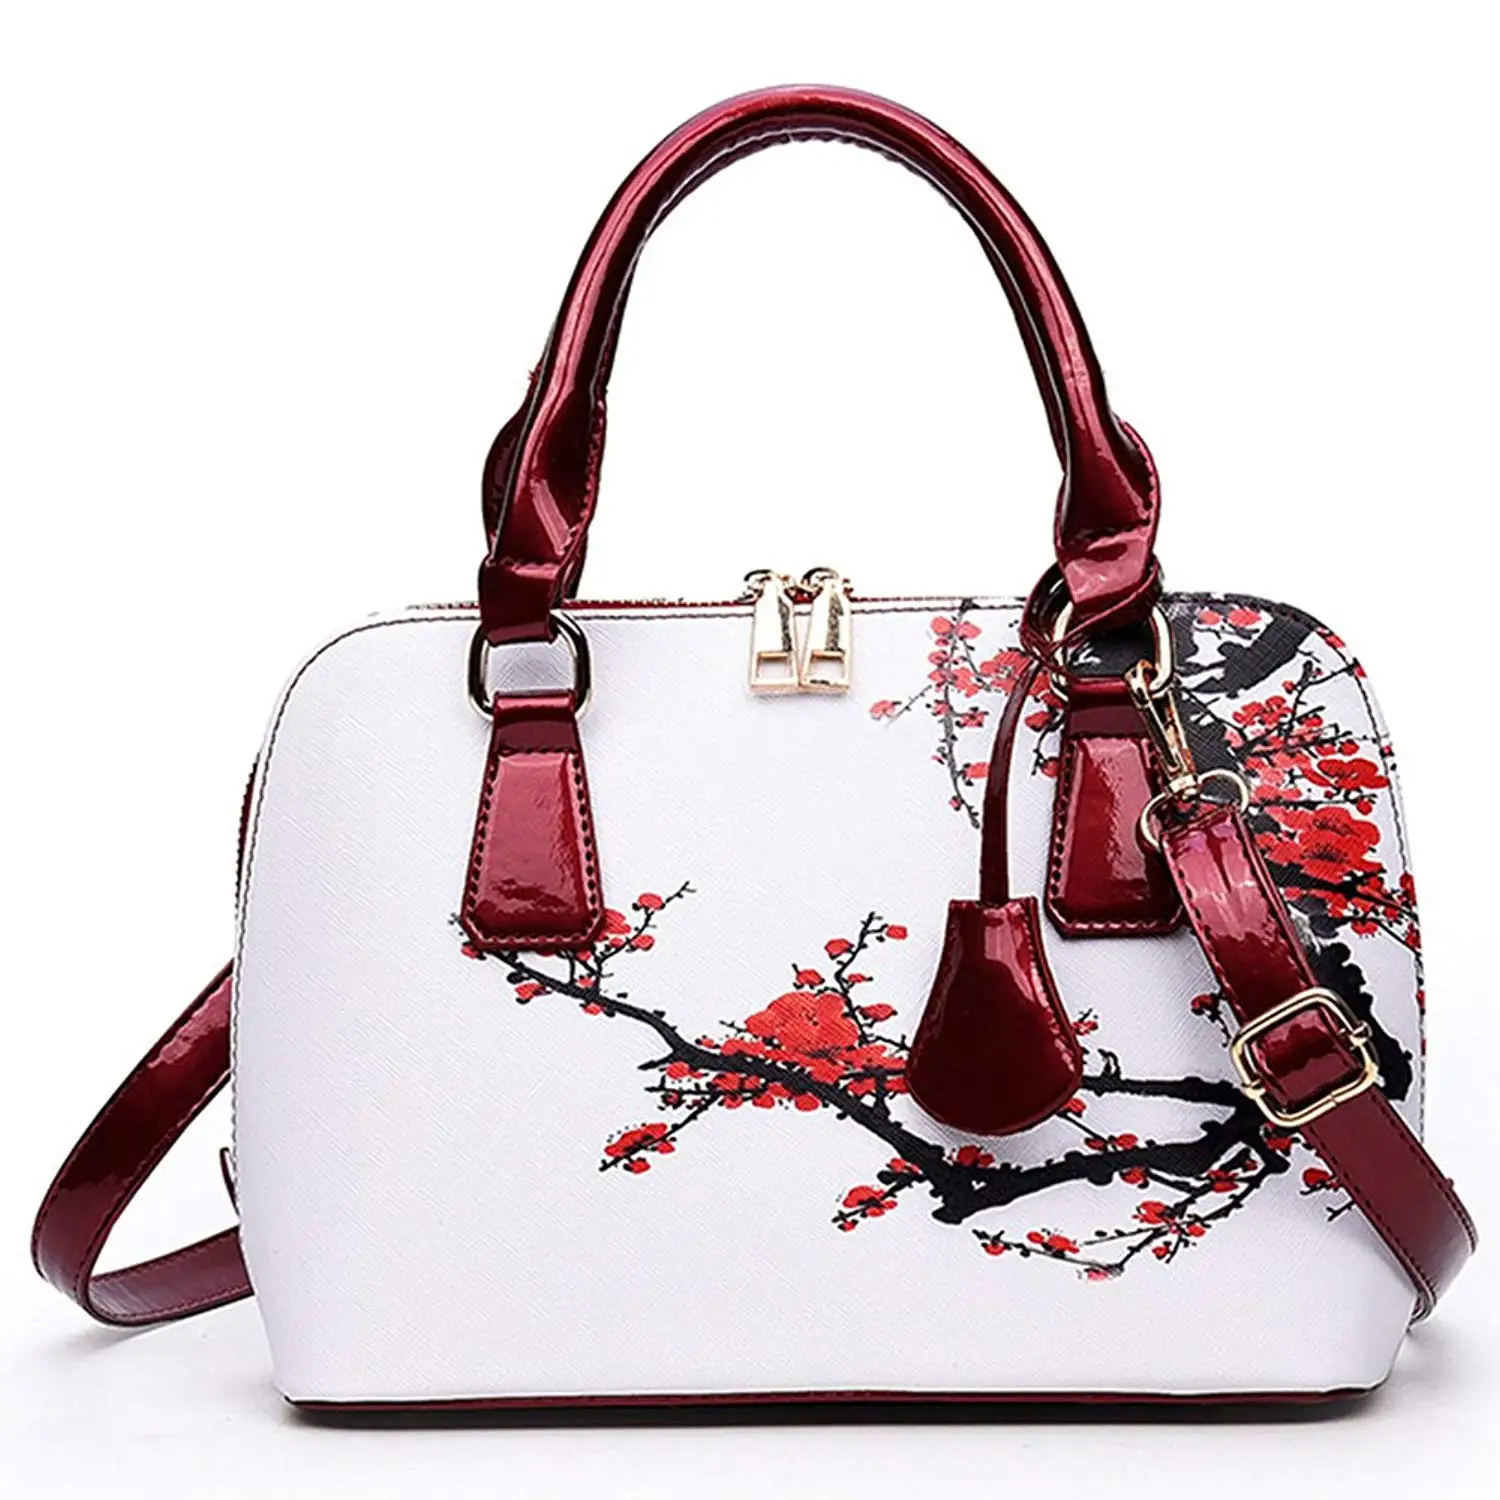 Handbags For Women Latest | semashow.com